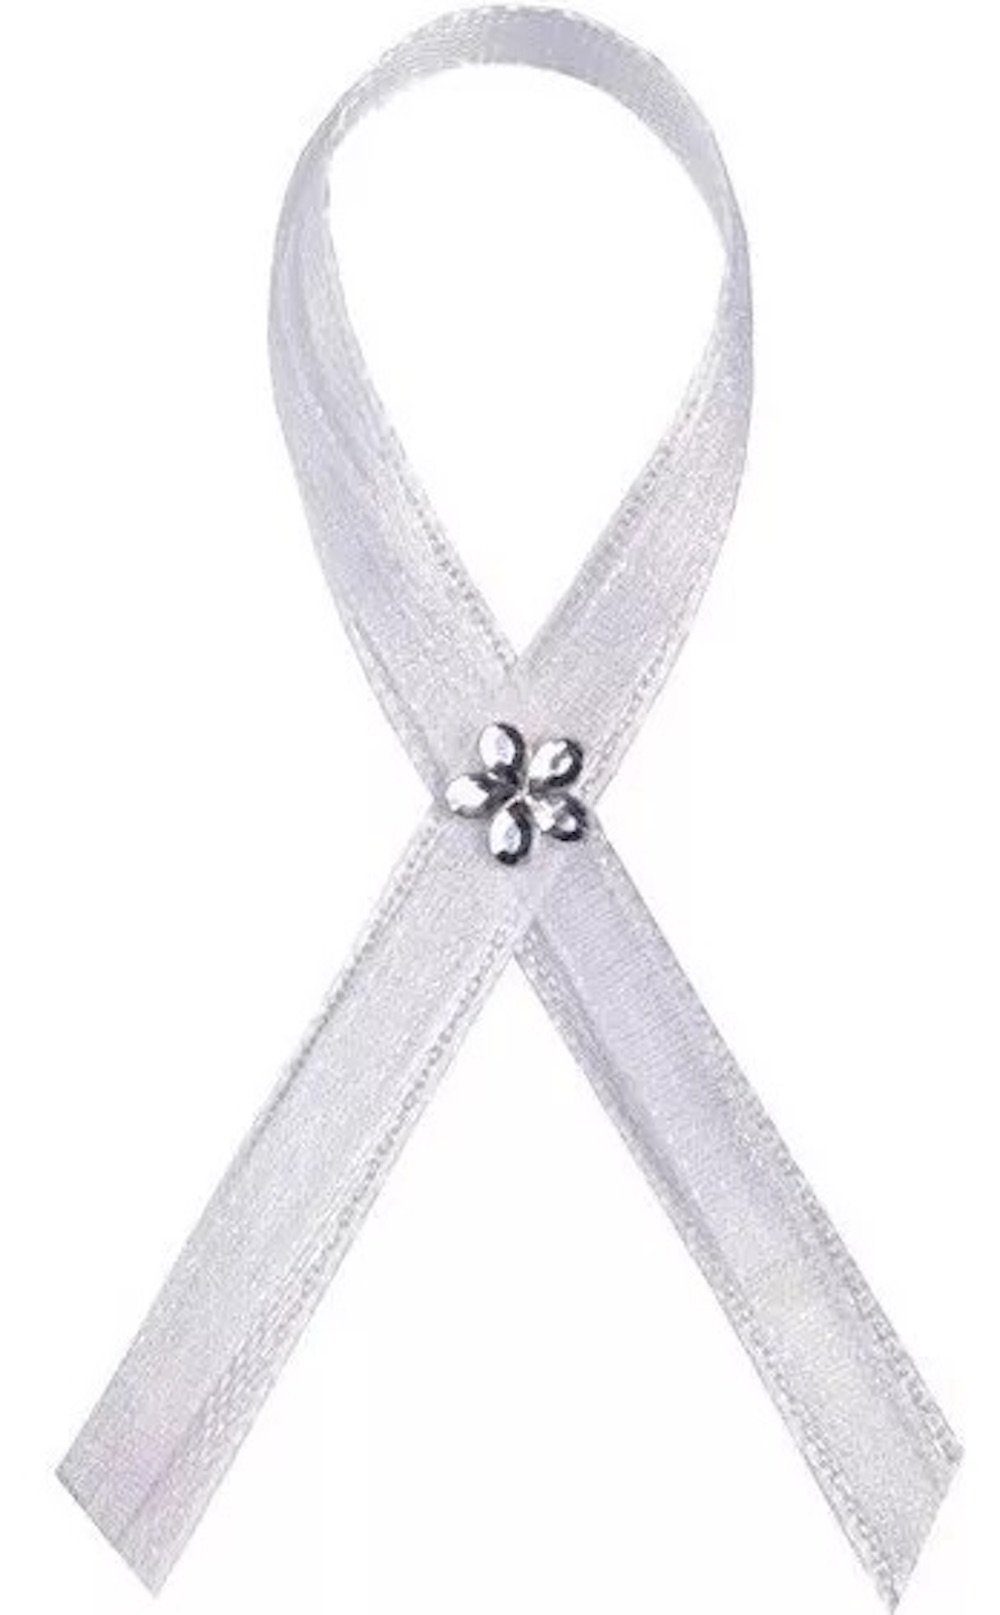 partydeco Bastelband Minischleifen, mit silber Blume, weiß, 25 Stück, 6